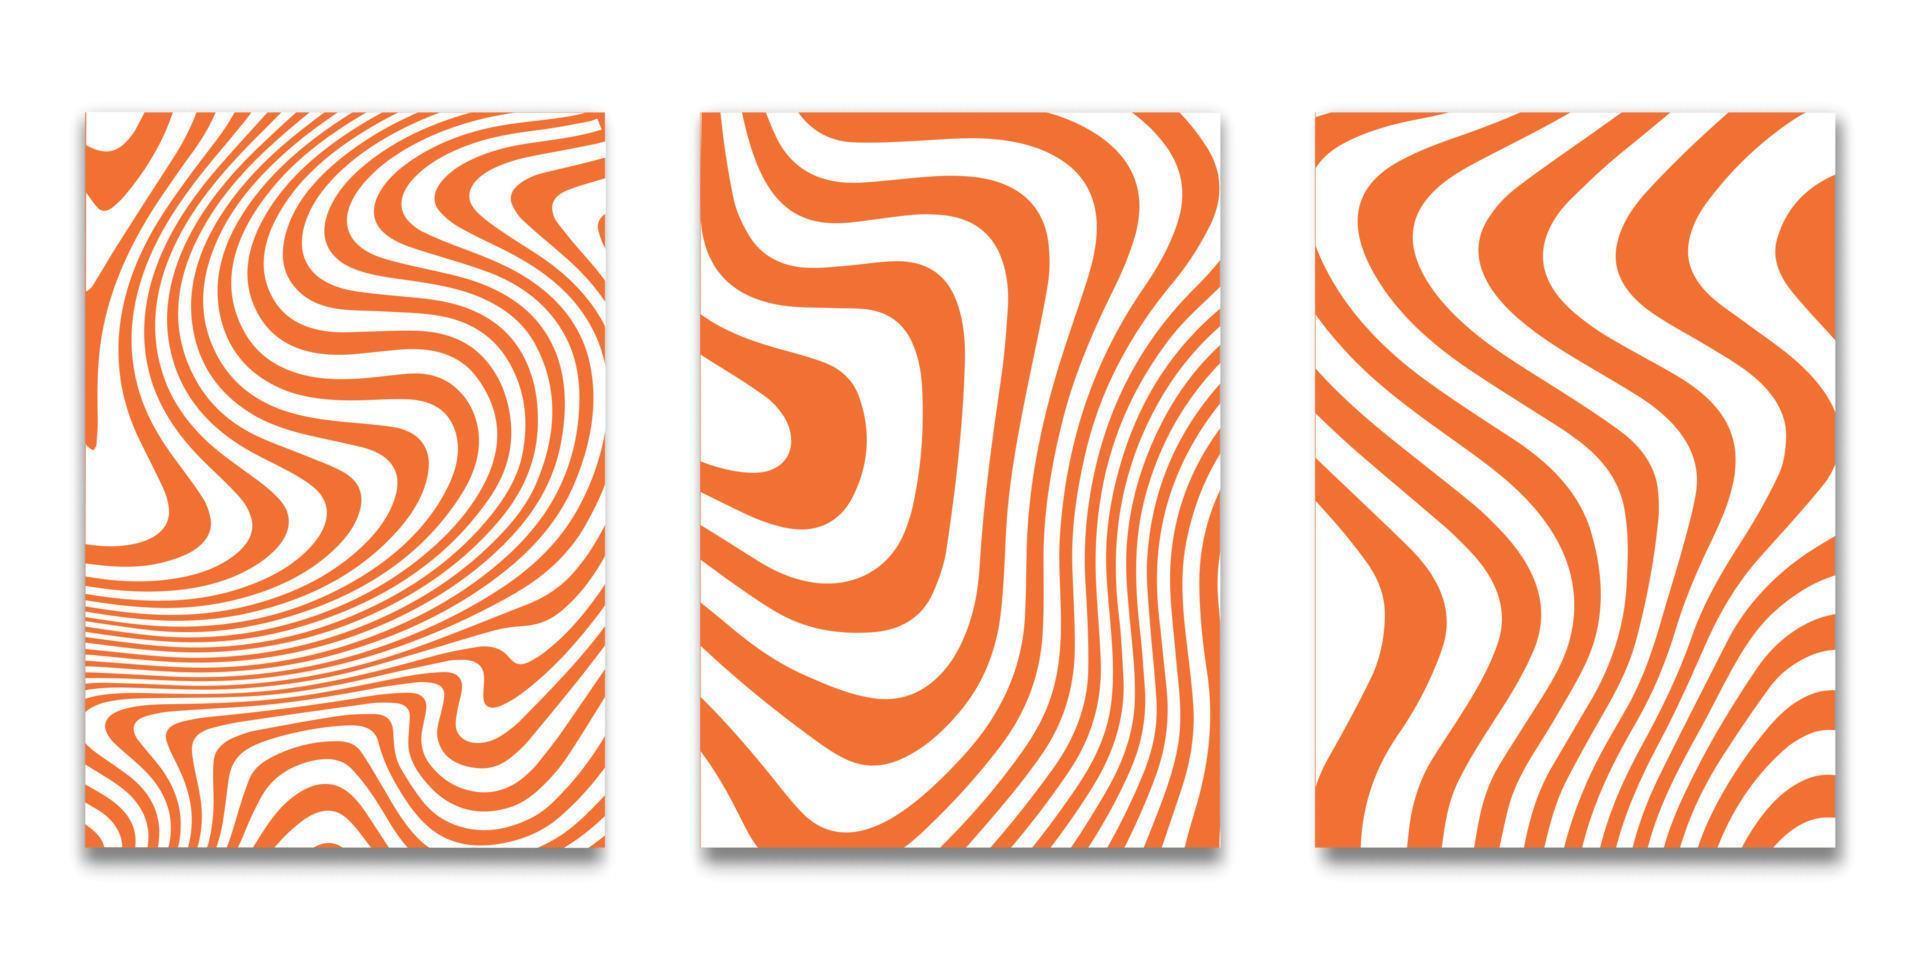 ensemble de couvertures minimales, arrière-plan rayé orange blanc, modèle d'ensemble de modèles de couvertures, illustration vectorielle vecteur